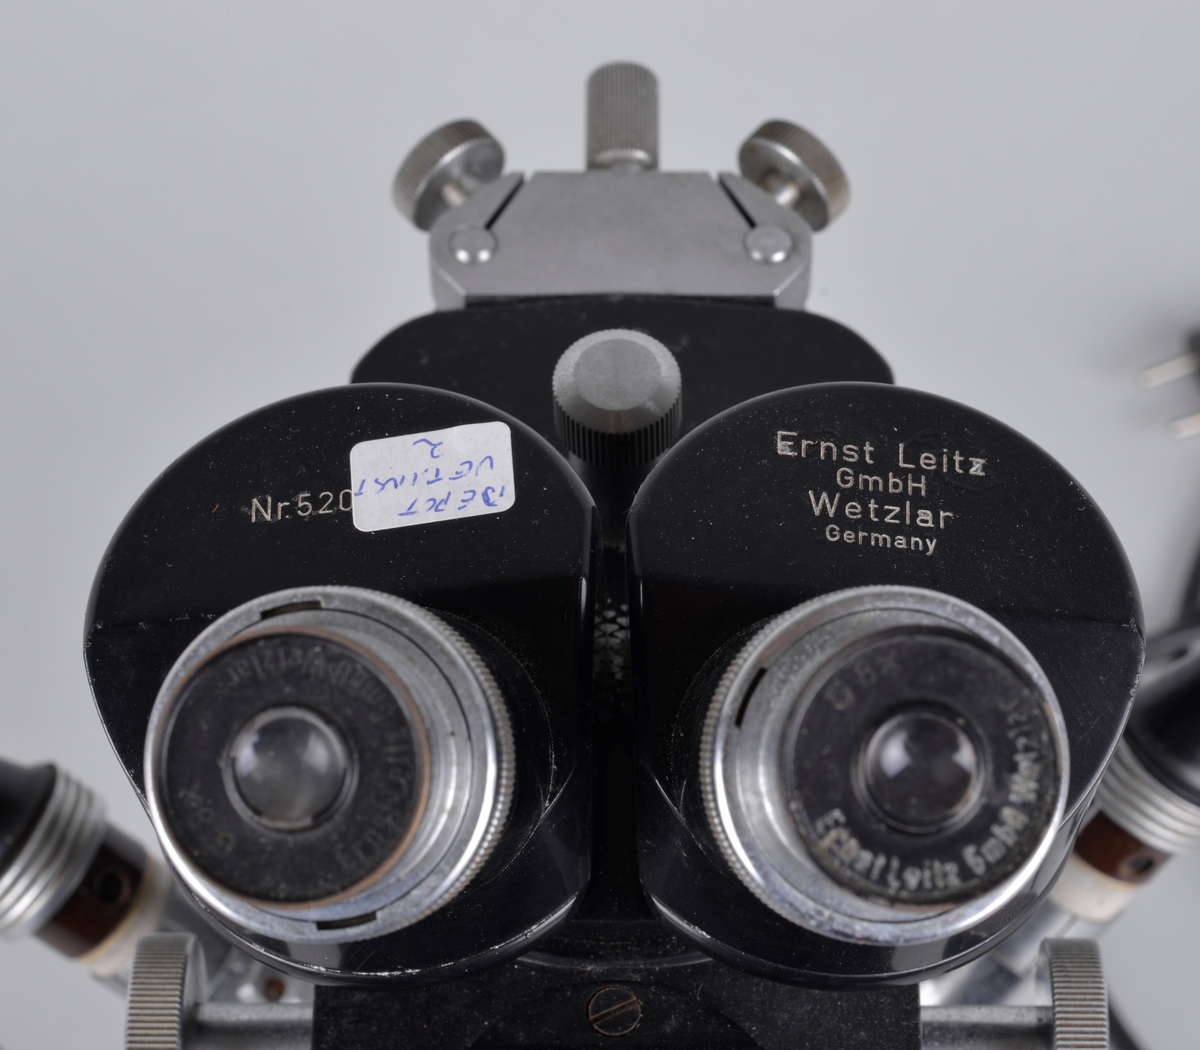 Binokulært mikroskop, har to okularer for bruk med begge øyne.
Apparatet er produsert i Tyskeland og brukt av Vetrinærinstituttets fagfolk. 

Chassiet er muligens laget i stål, svartlakkert.